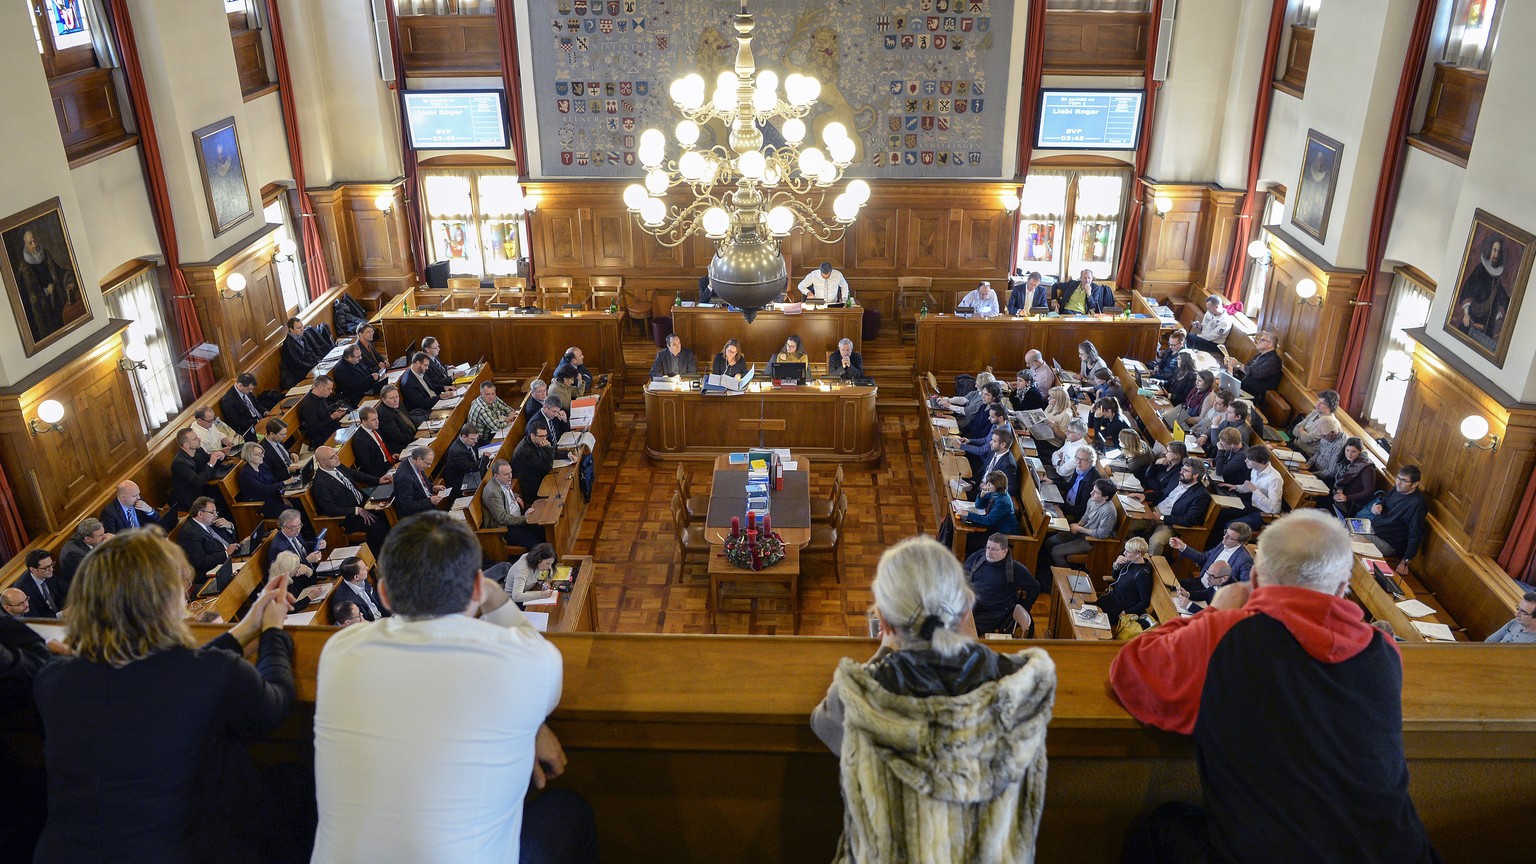 Der Gemeinderat tagt normalerweise im Zürcher Rathaus (Bild).